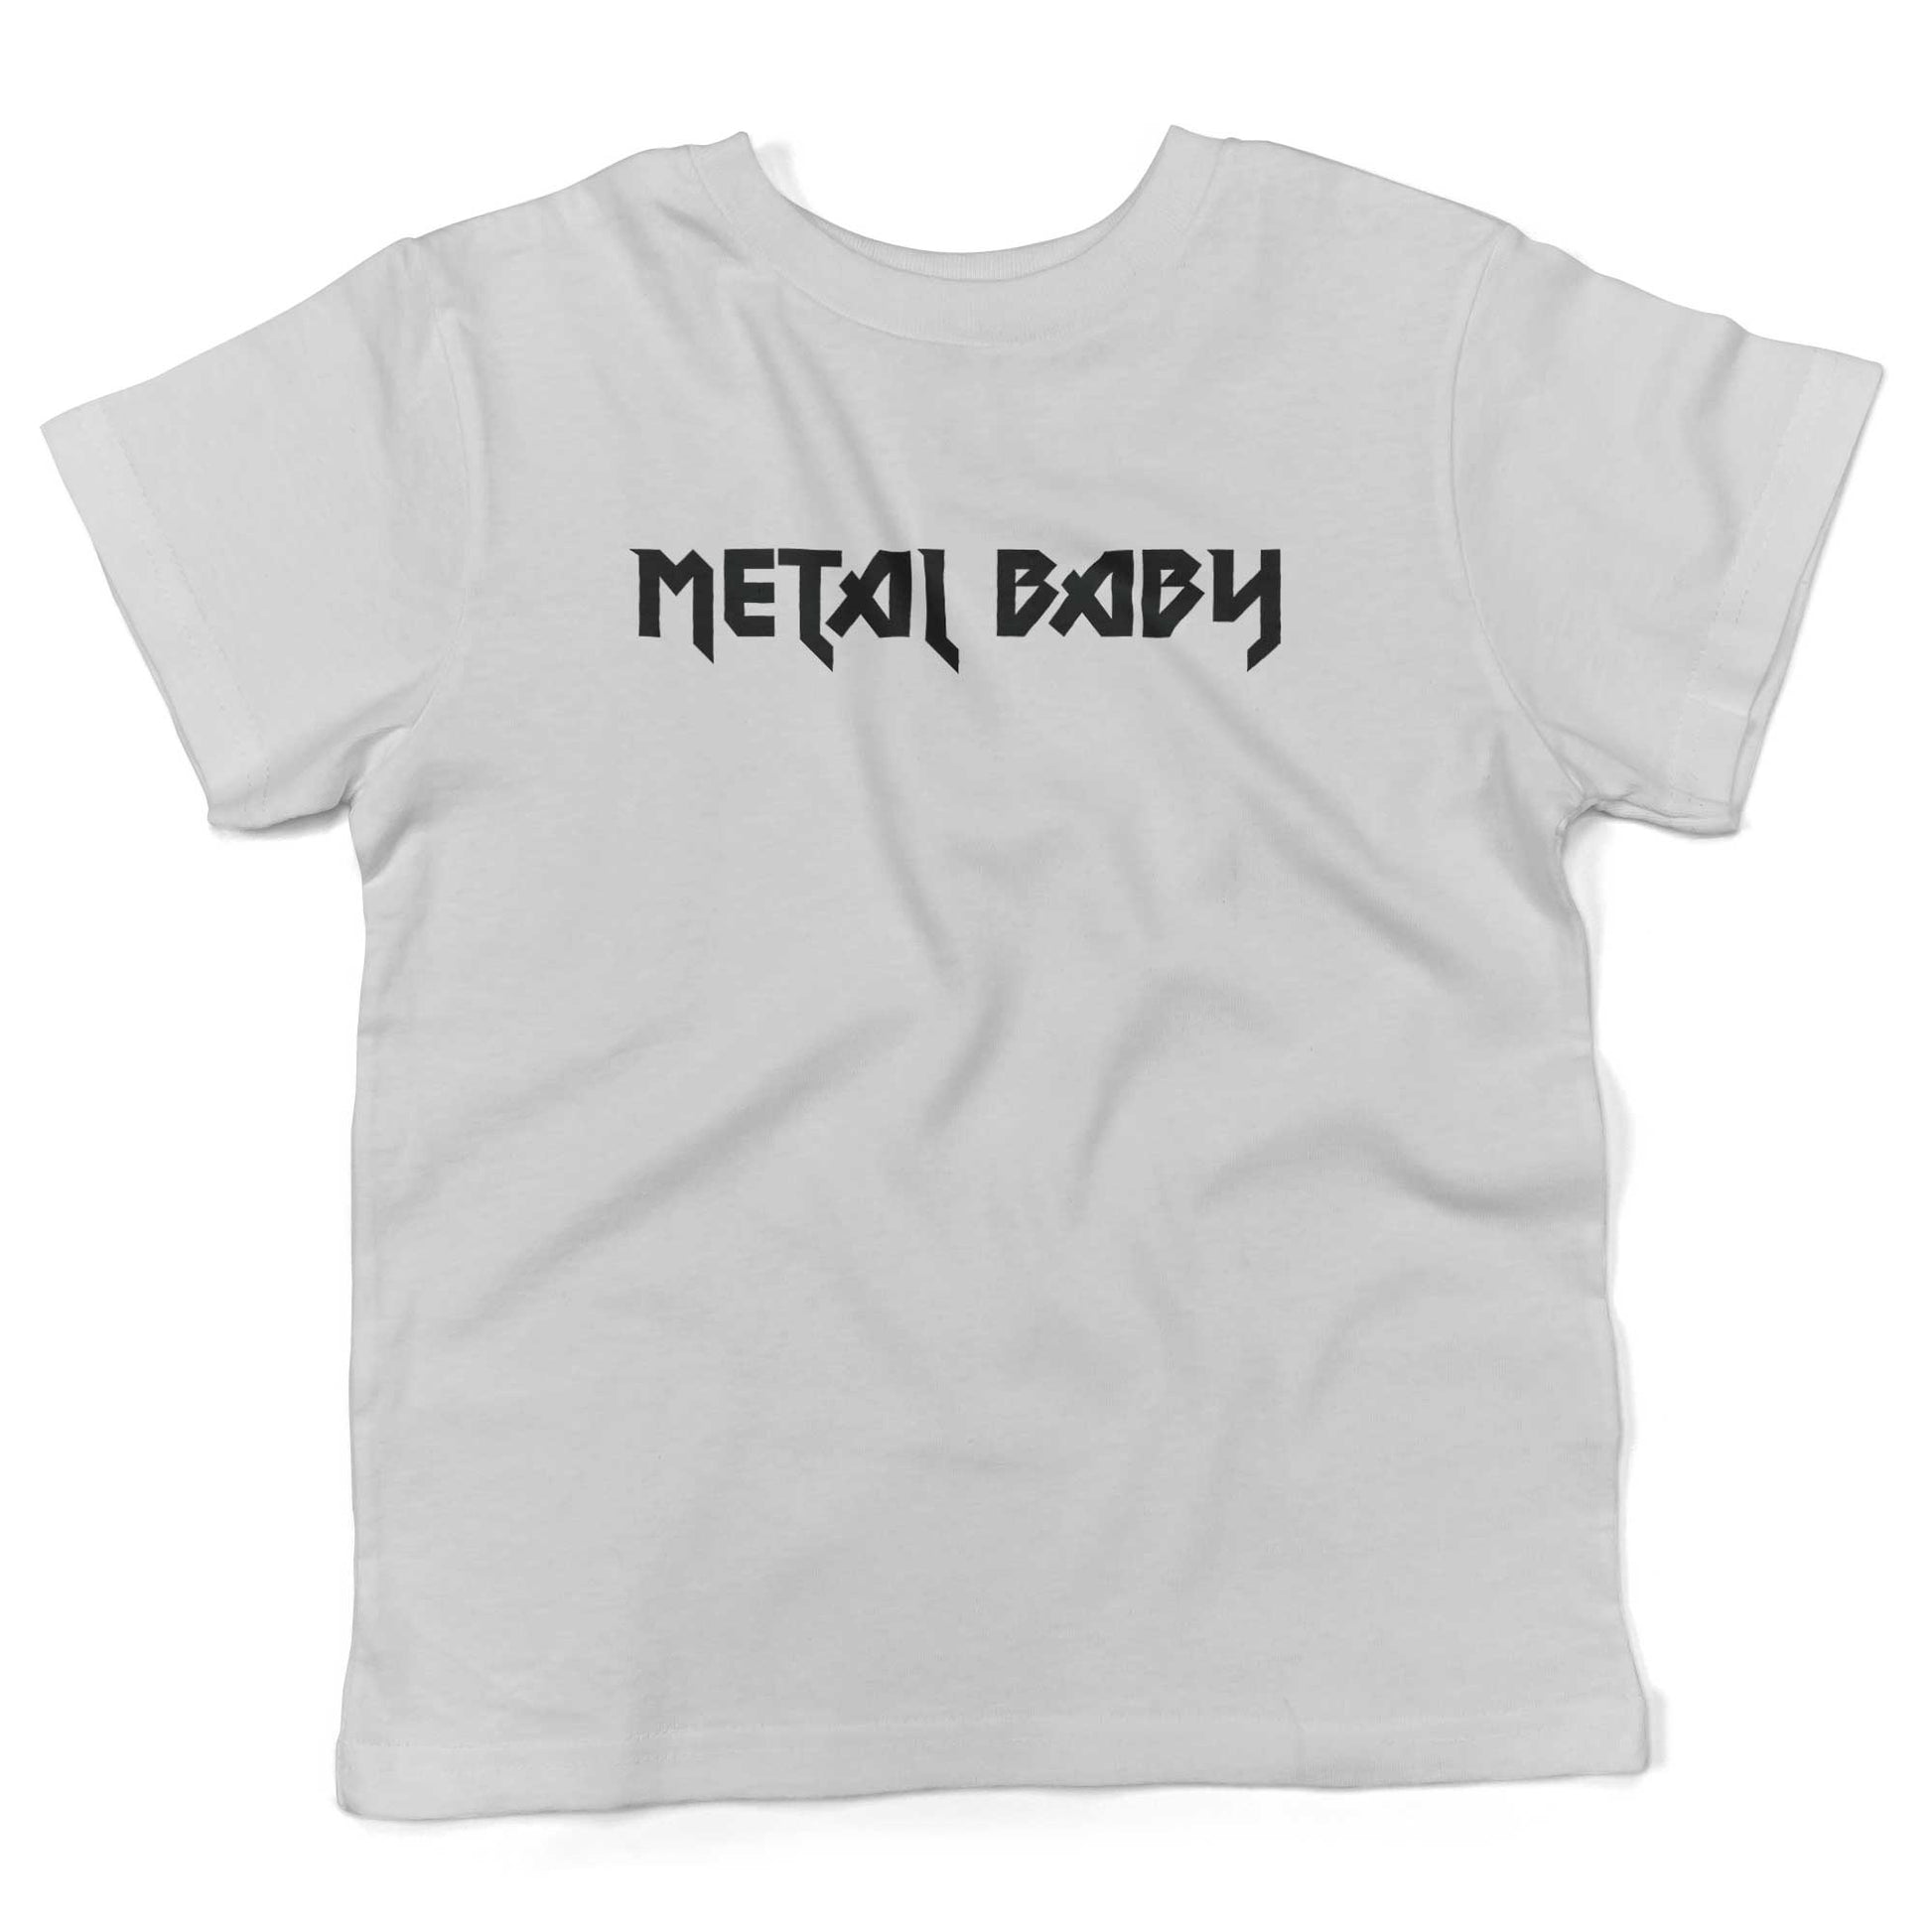 Metal Baby Toddler Shirt-White-2T